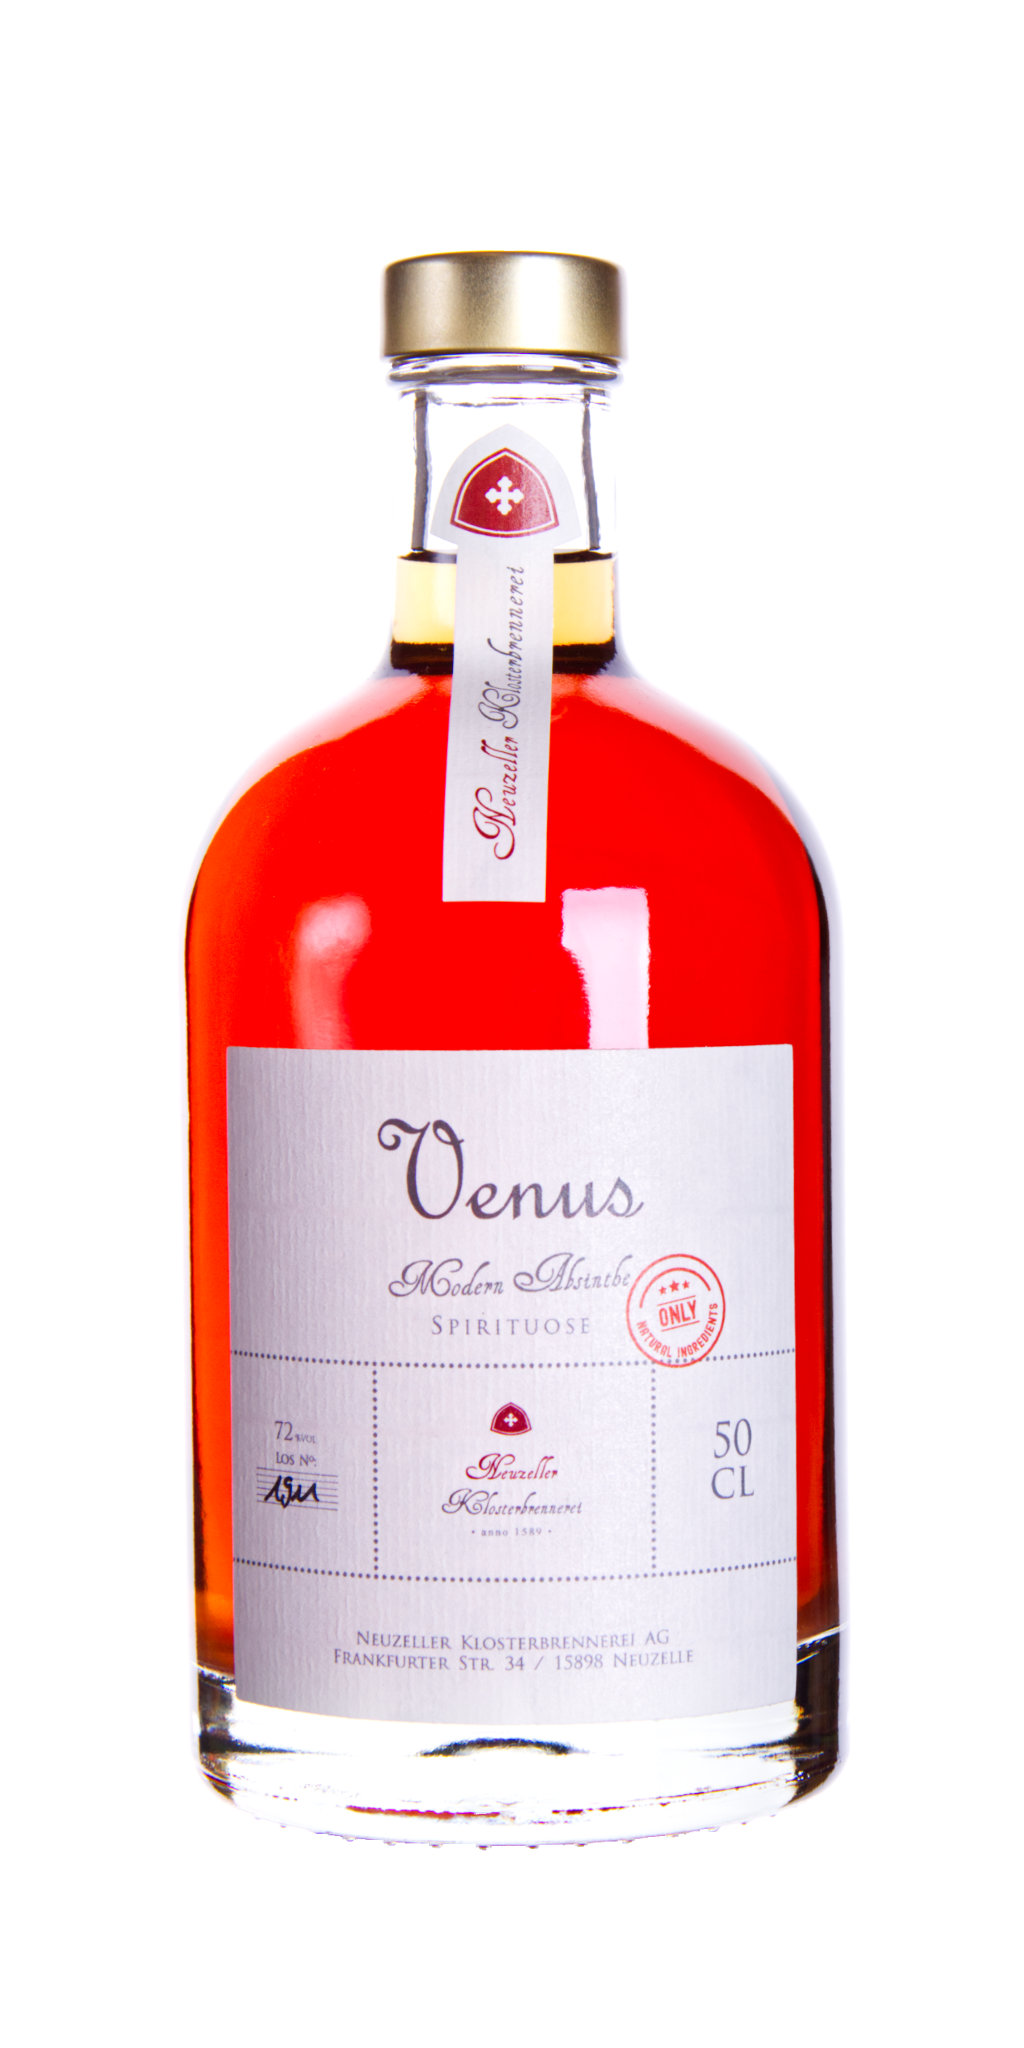 Venus 500 ml